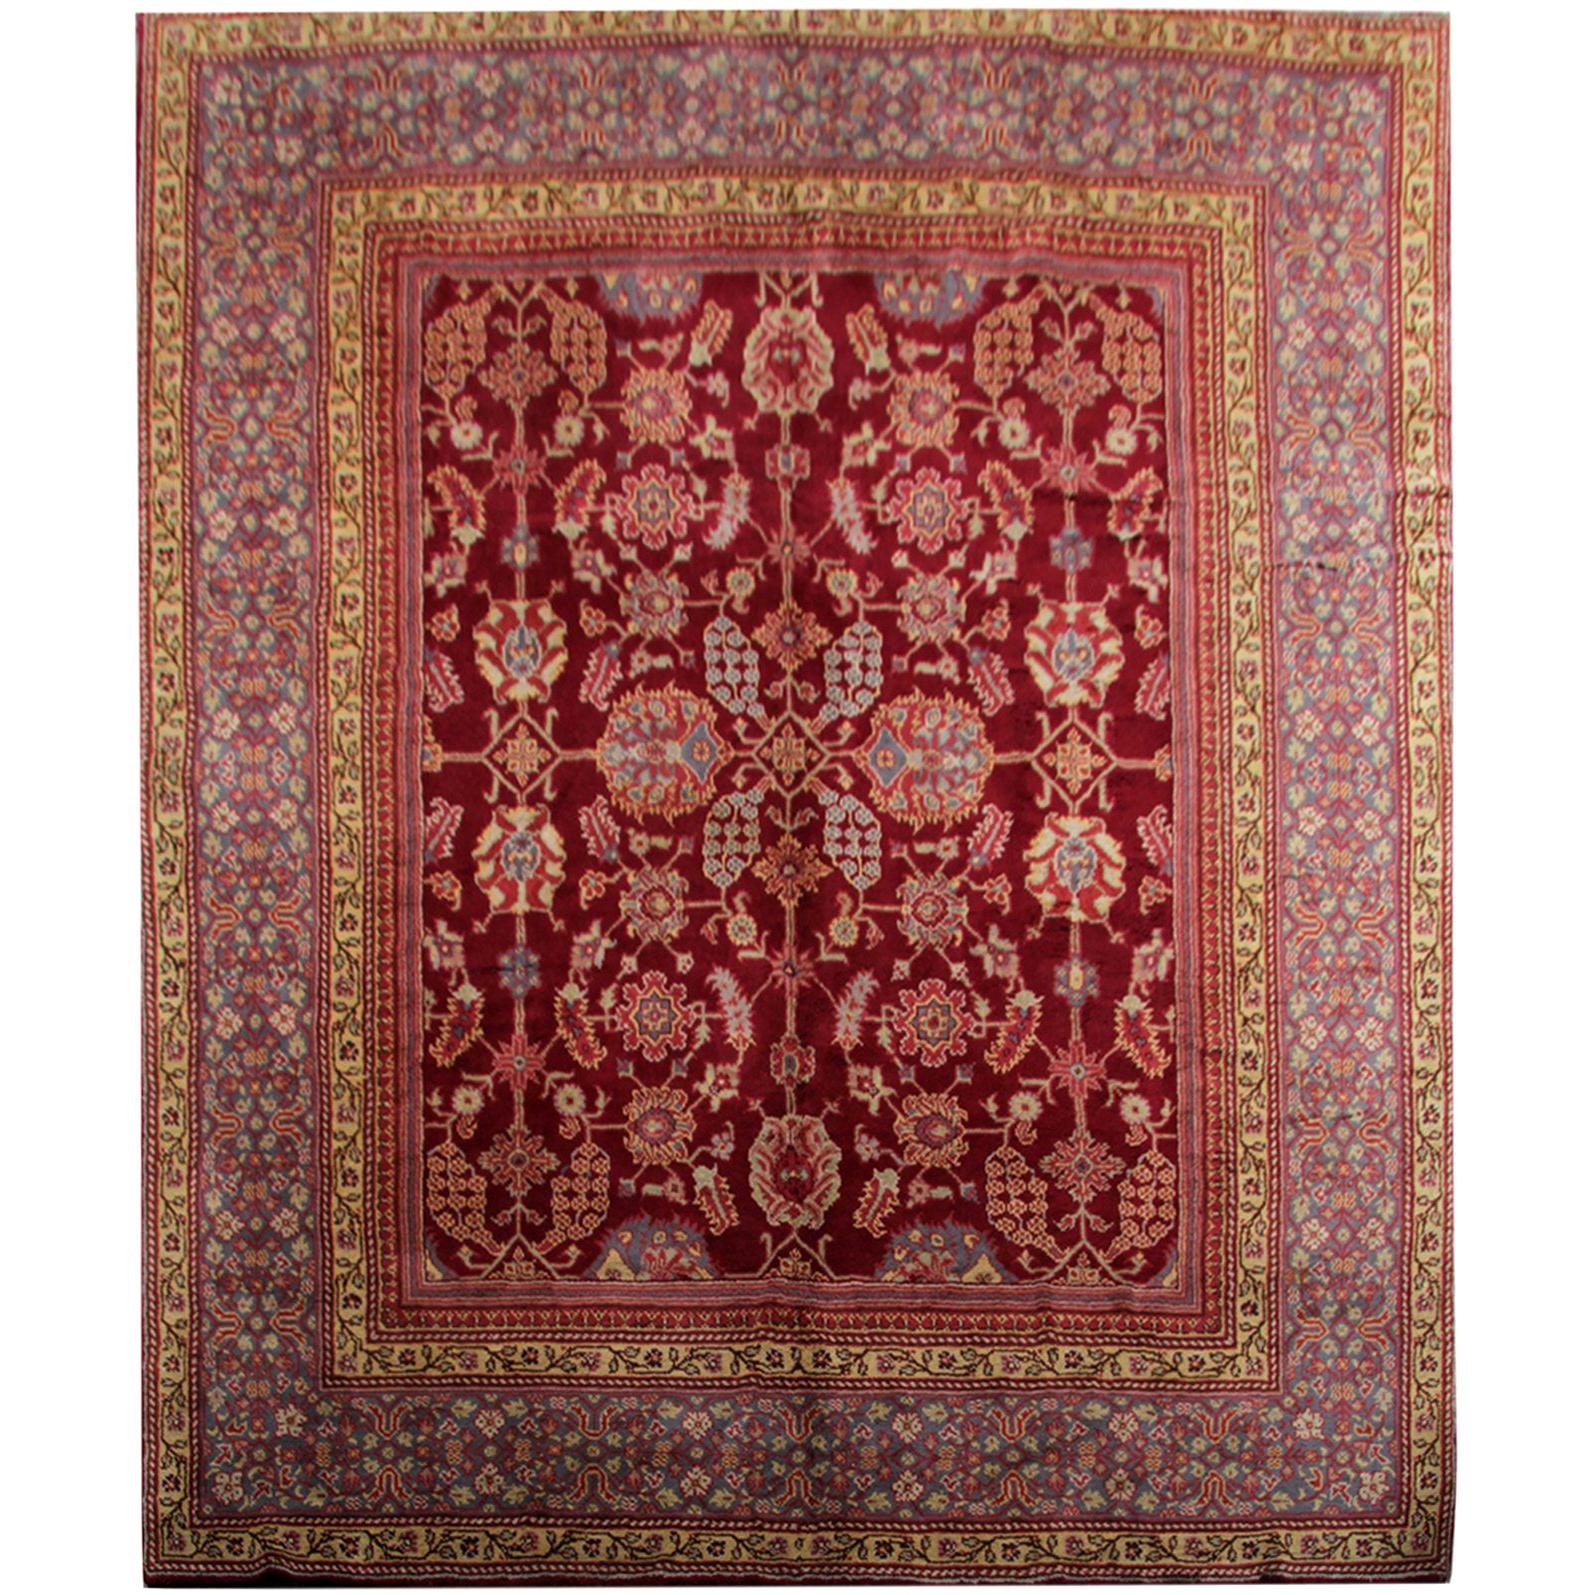 Handgefertigter handgefertigter Teppich, seltene antike Teppiche, englischer Ax Minster Art Deco Teppich